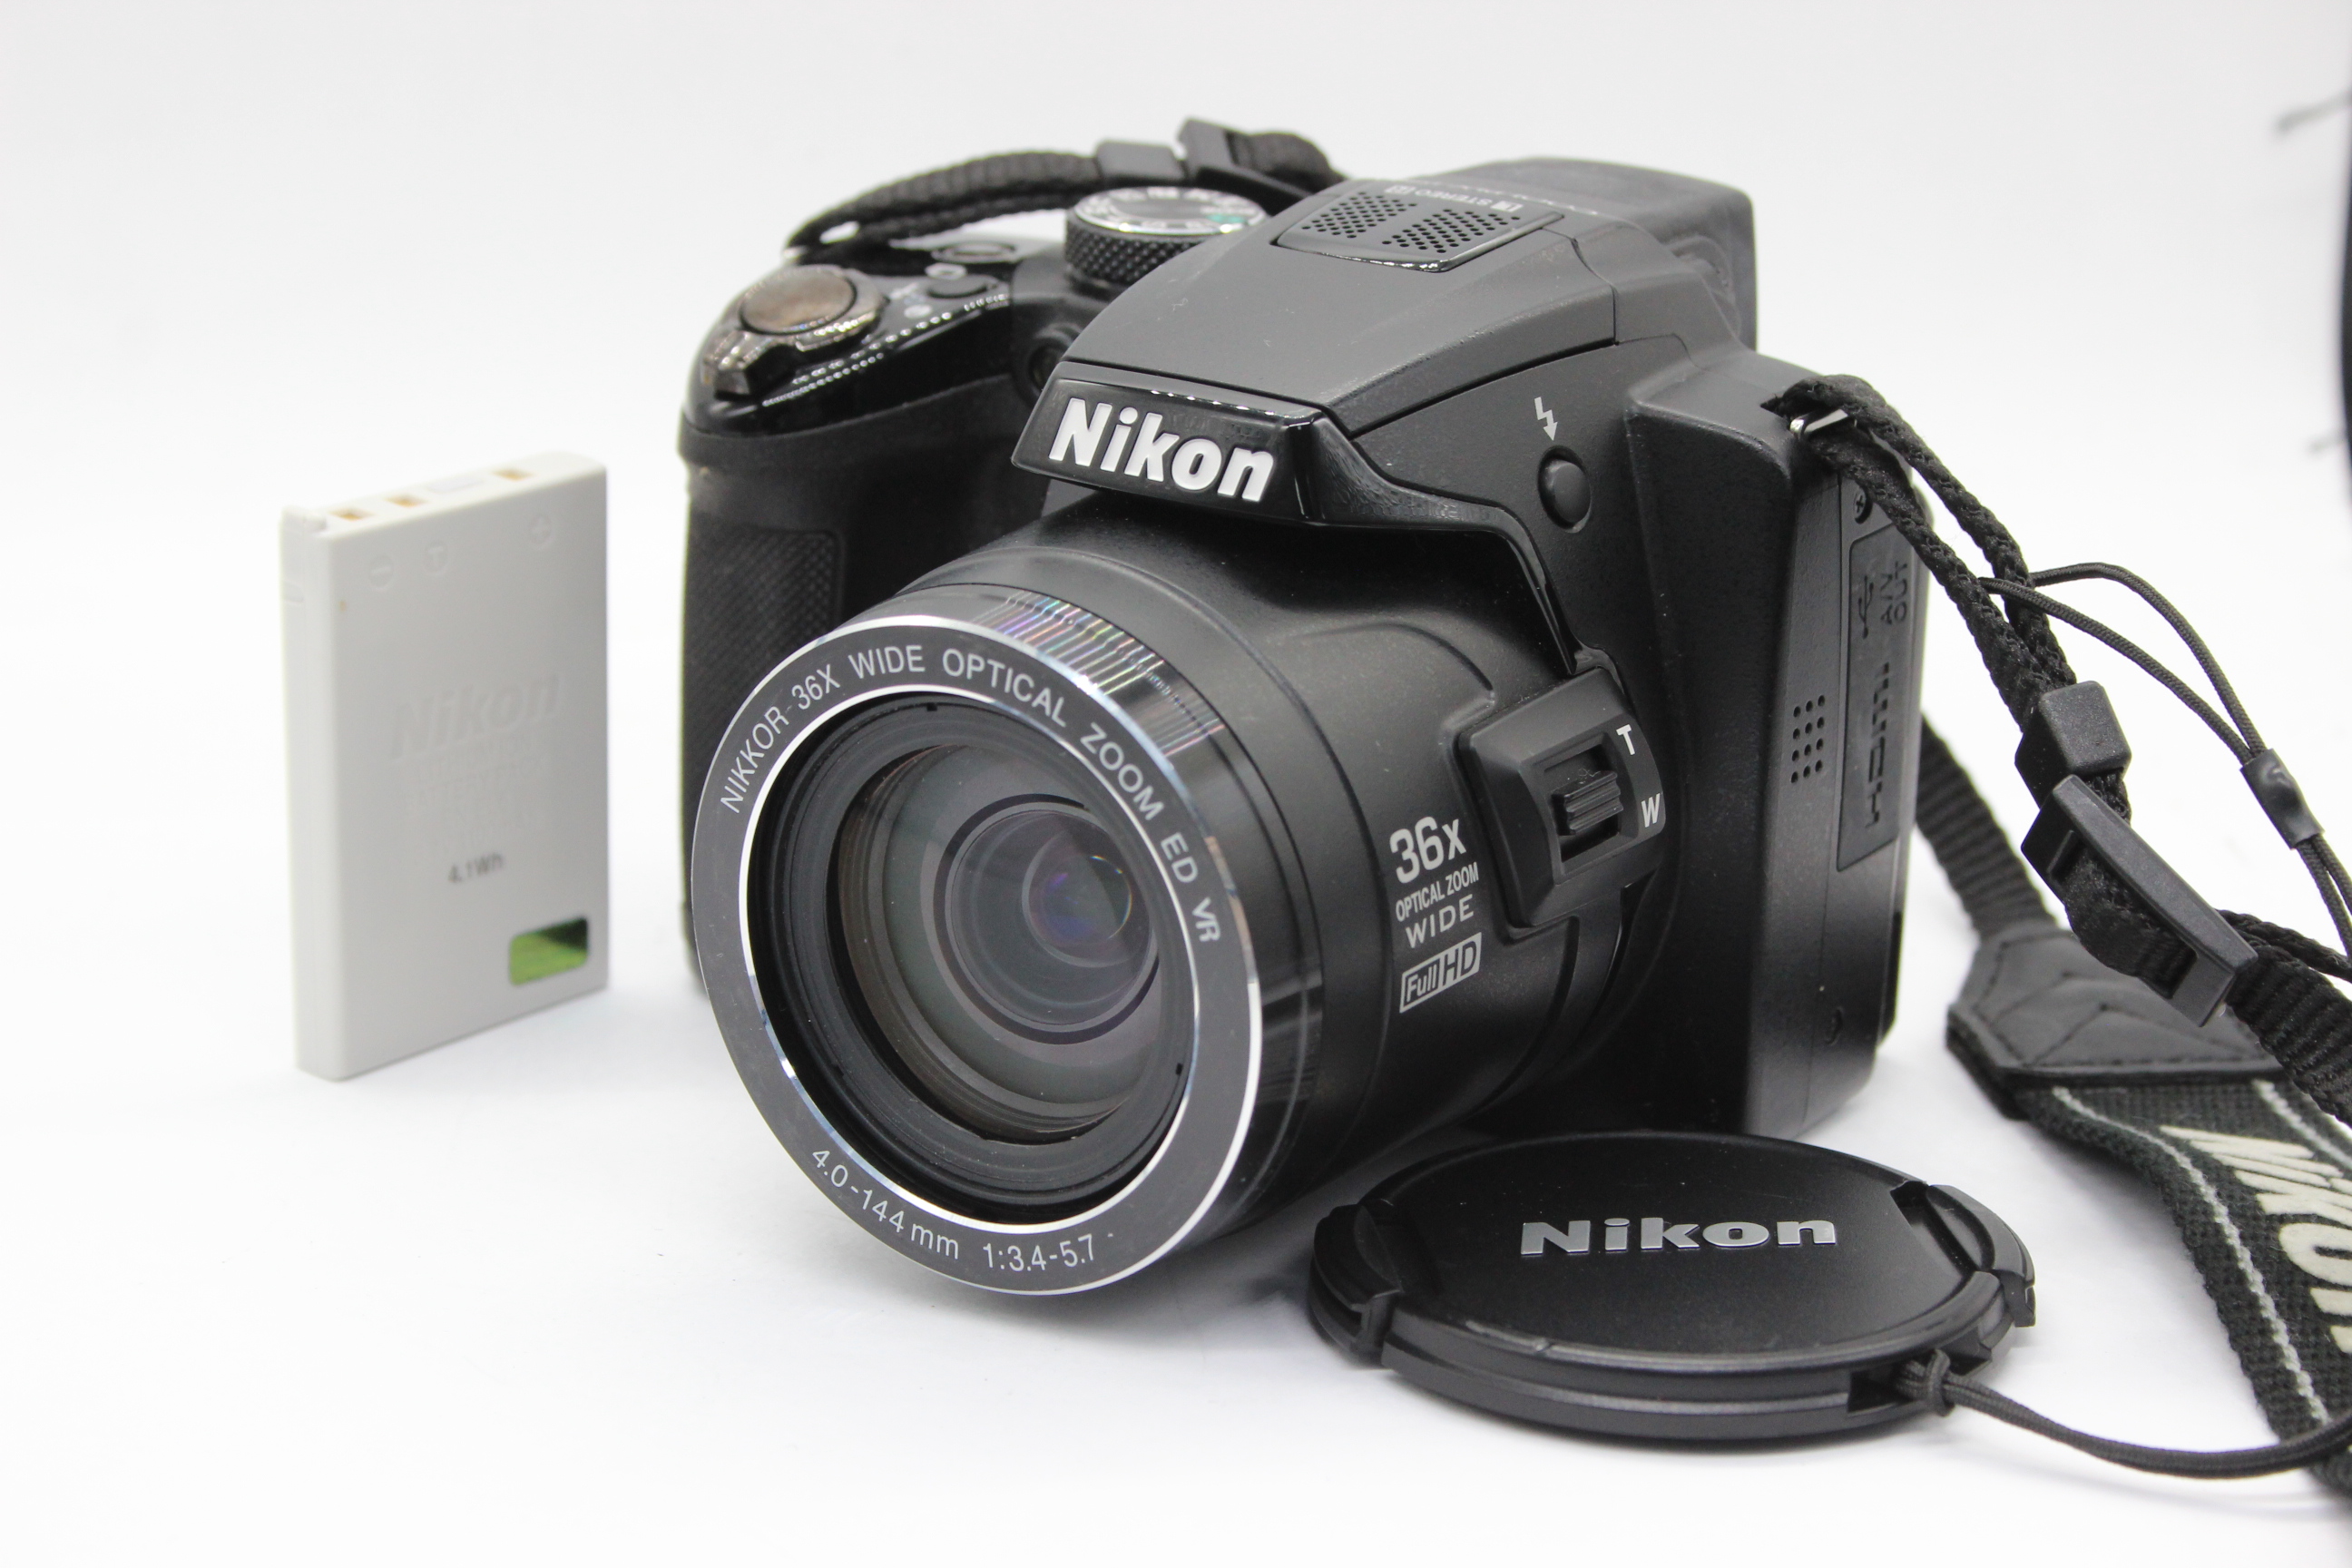  ニコン Nikon Coolpix P500 Nikkor 36x Wide バッテリー付き コンパクトデジタルカメラ R  C8947